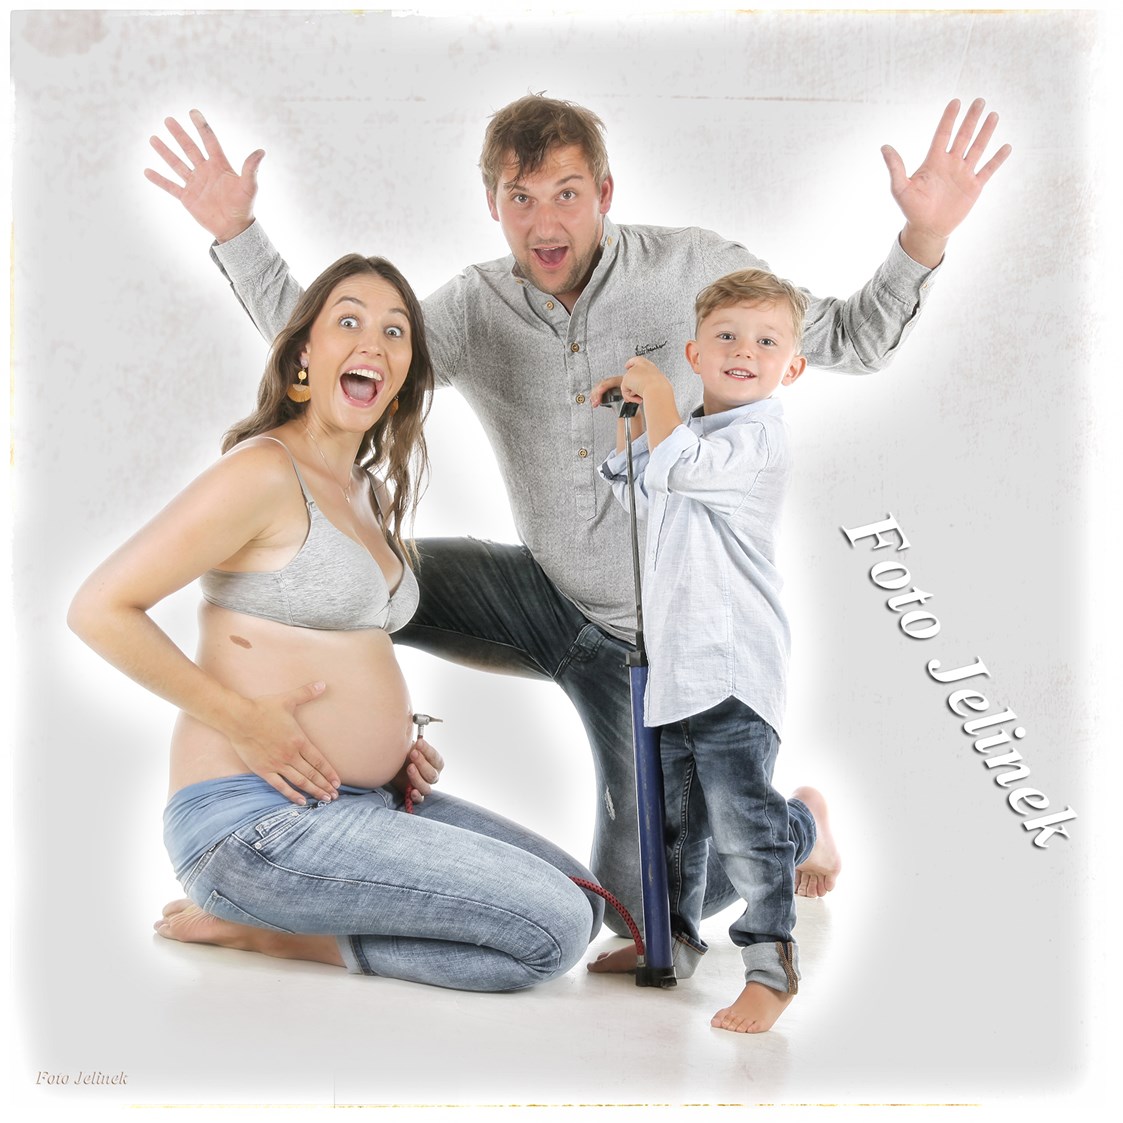 Unternehmen: Babybauchshooting - Foto Jelinek - Rudolf Thienel